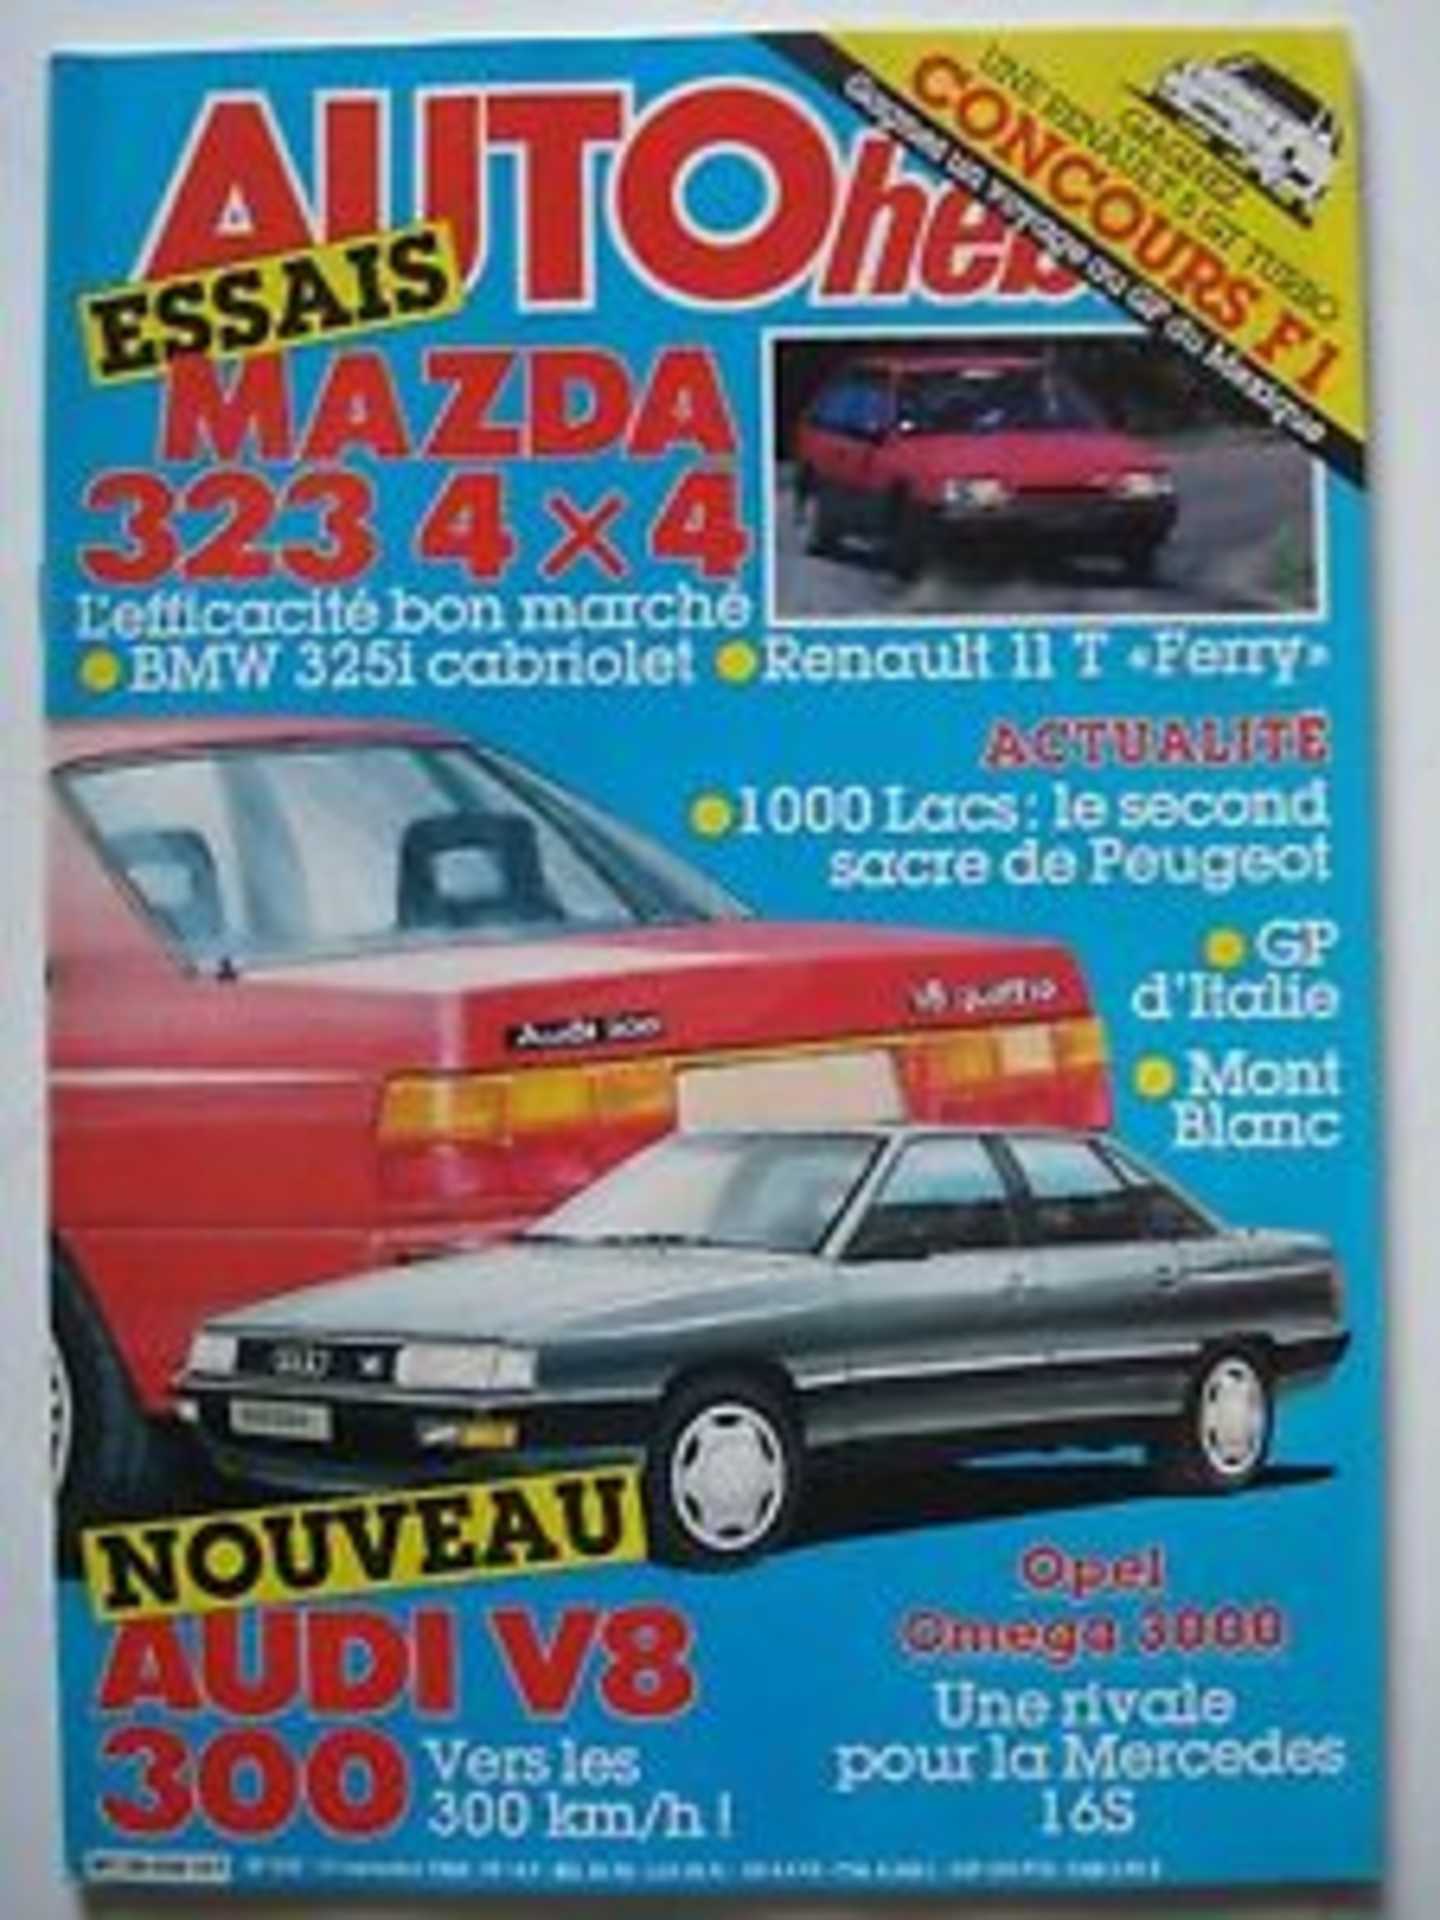 Renault 11 Turbo sur la page de couverture d'auto hebdo